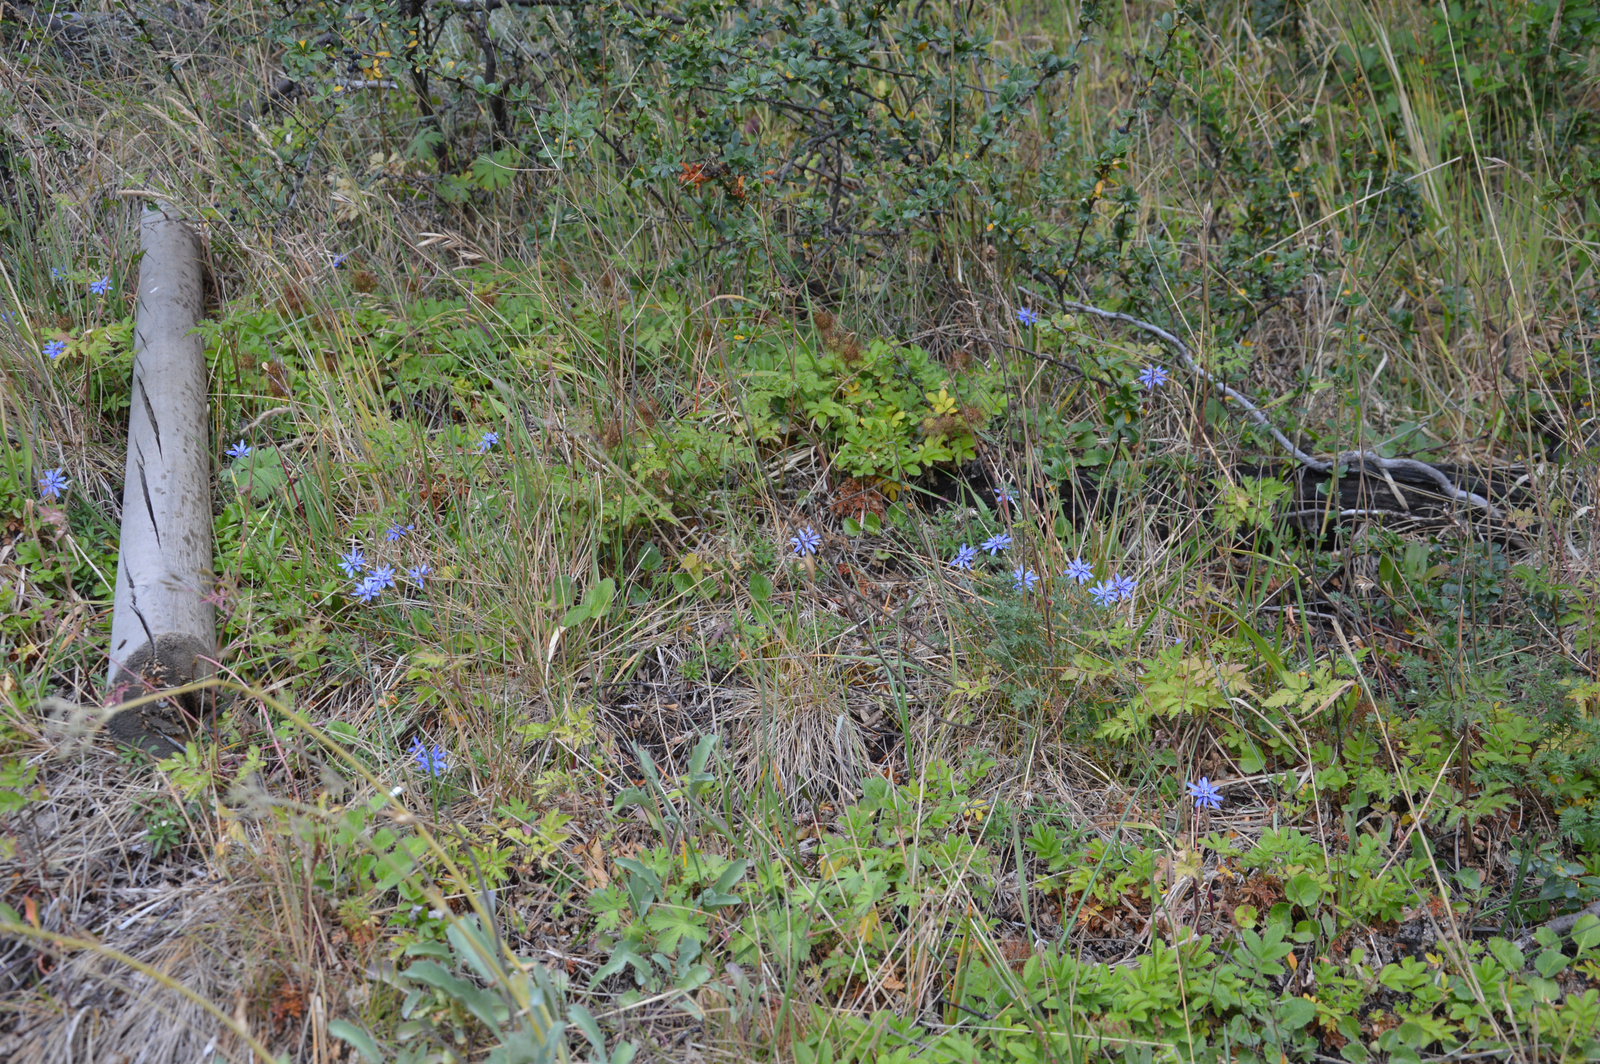 Grey-gleccser Kék virágok a fűben